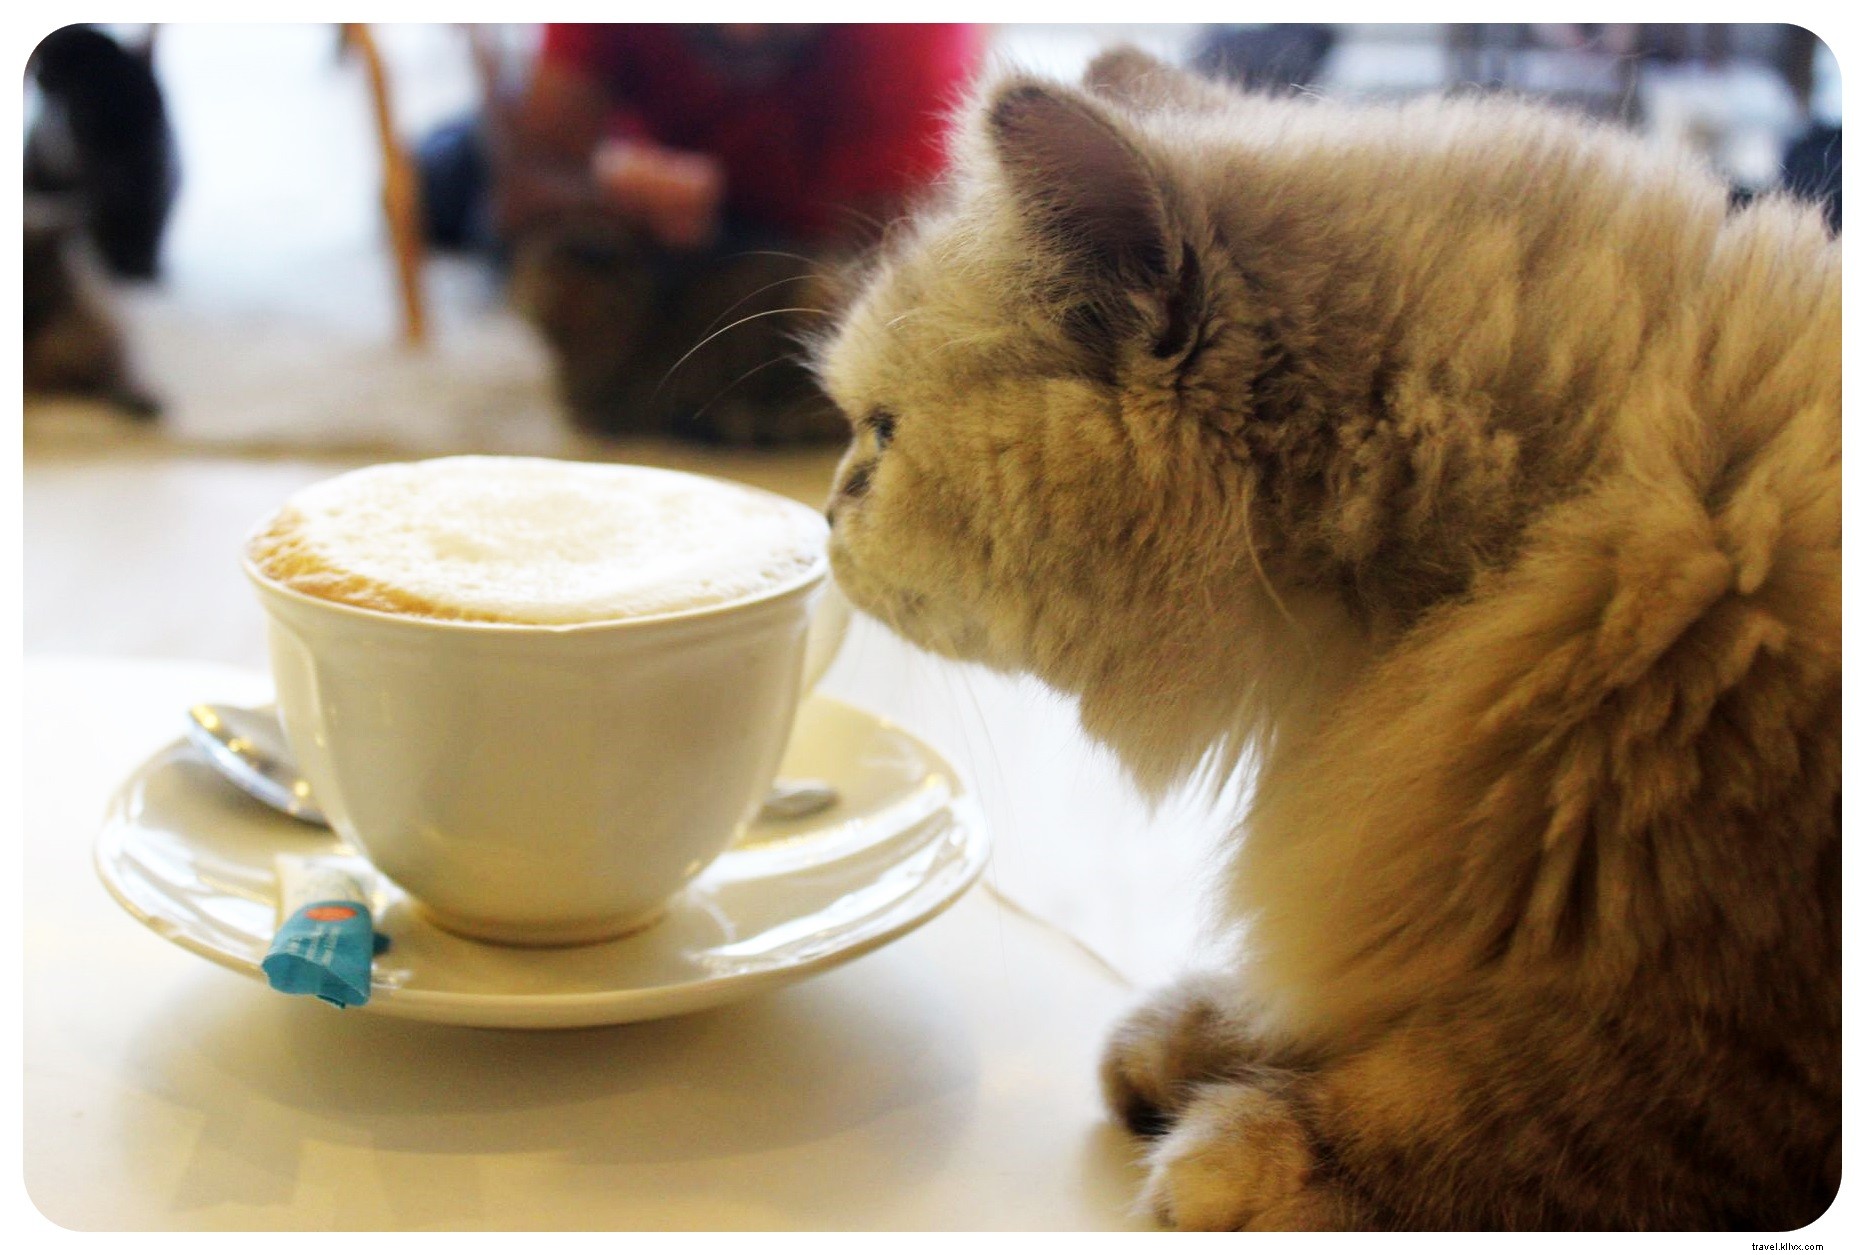 zampe, baffi e cappuccini:scene dal Cat Cafe di Bangkok